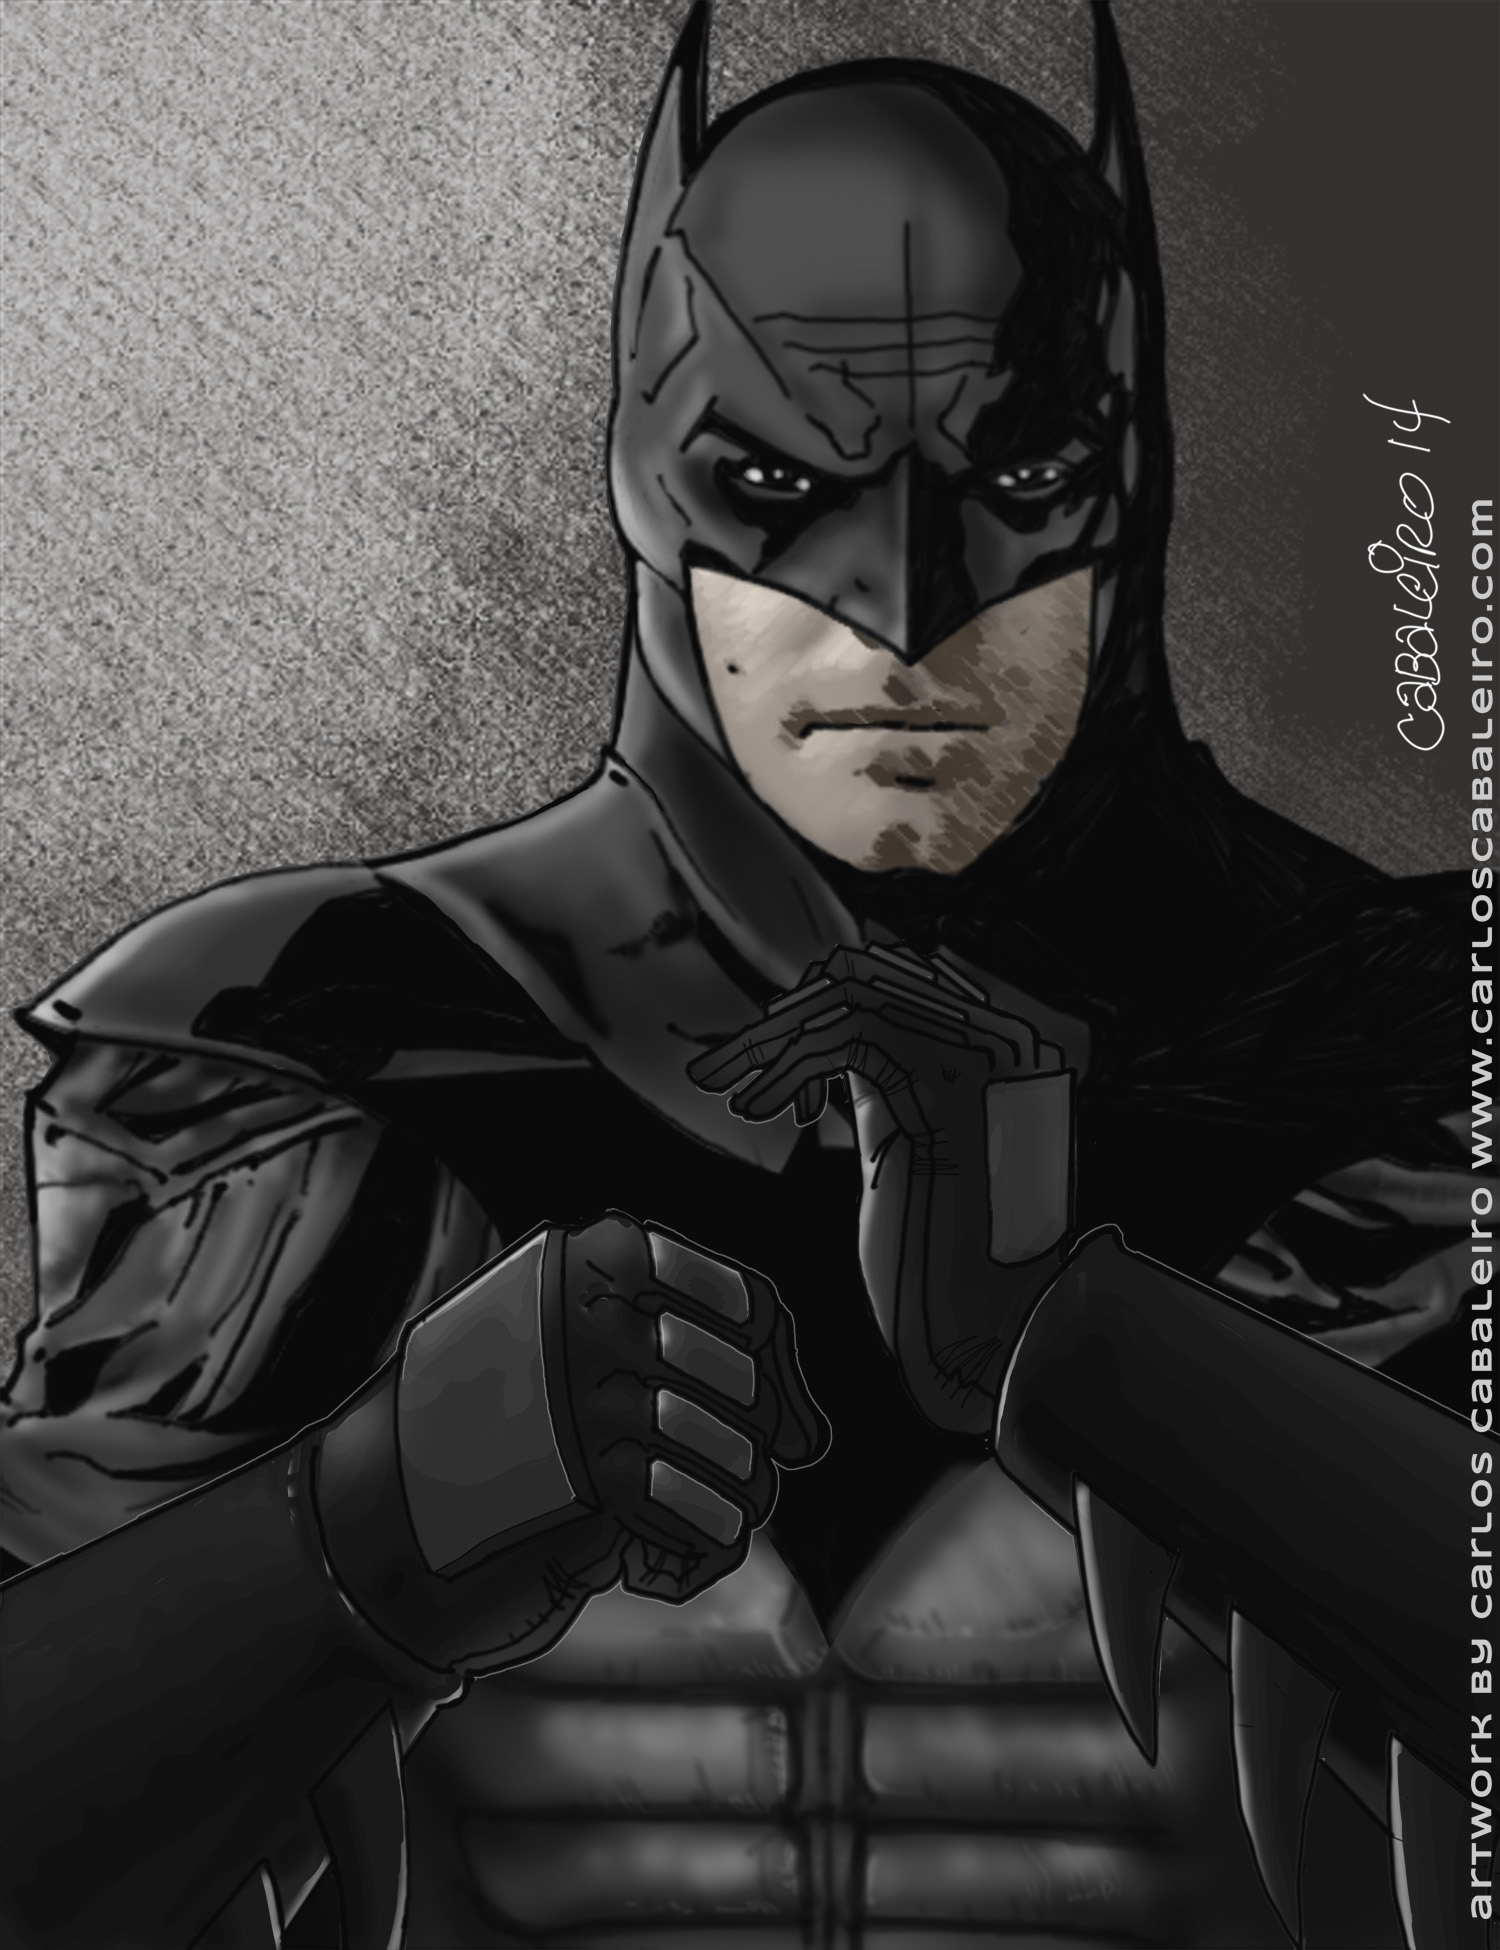 Exclusive: Our Own Ben Affleck as Batman Concept Art - Dark Knight News